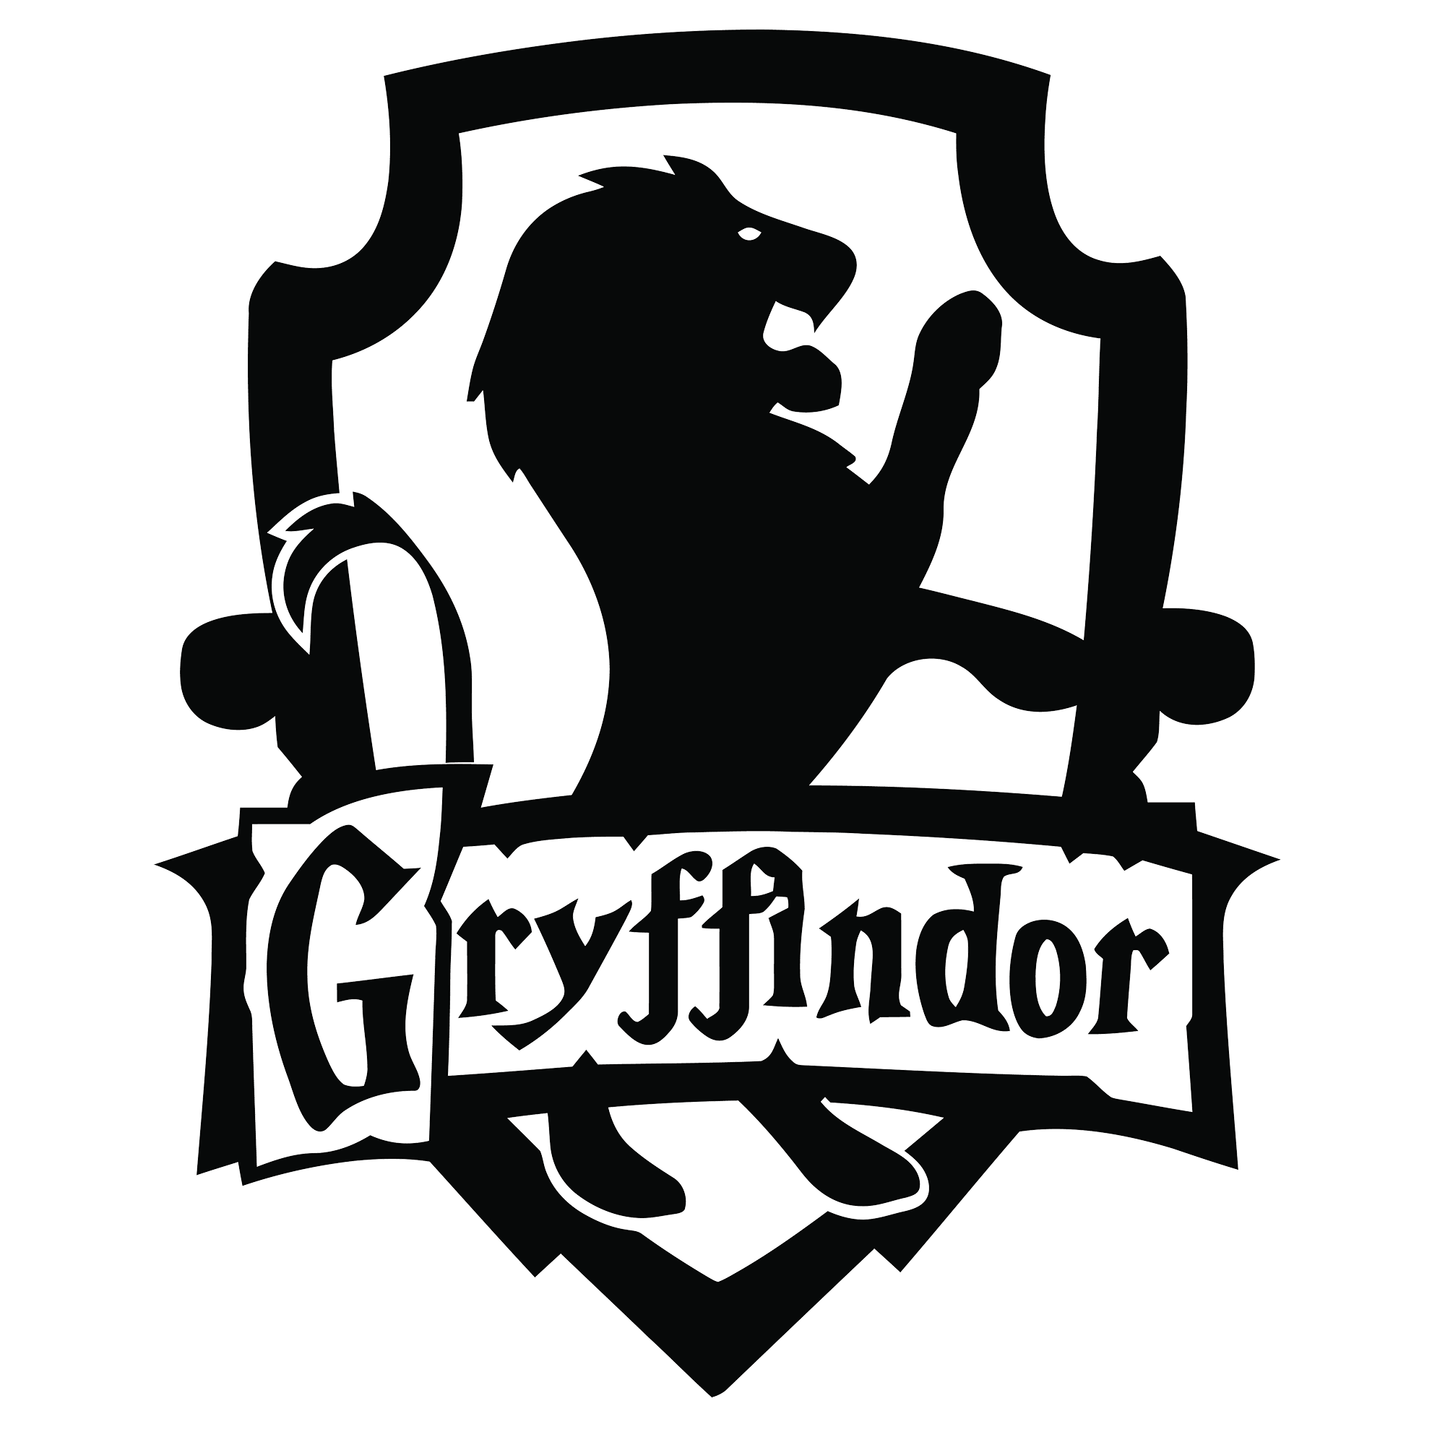 Harry Potter Gryffindor Vinyl Decal Sticker